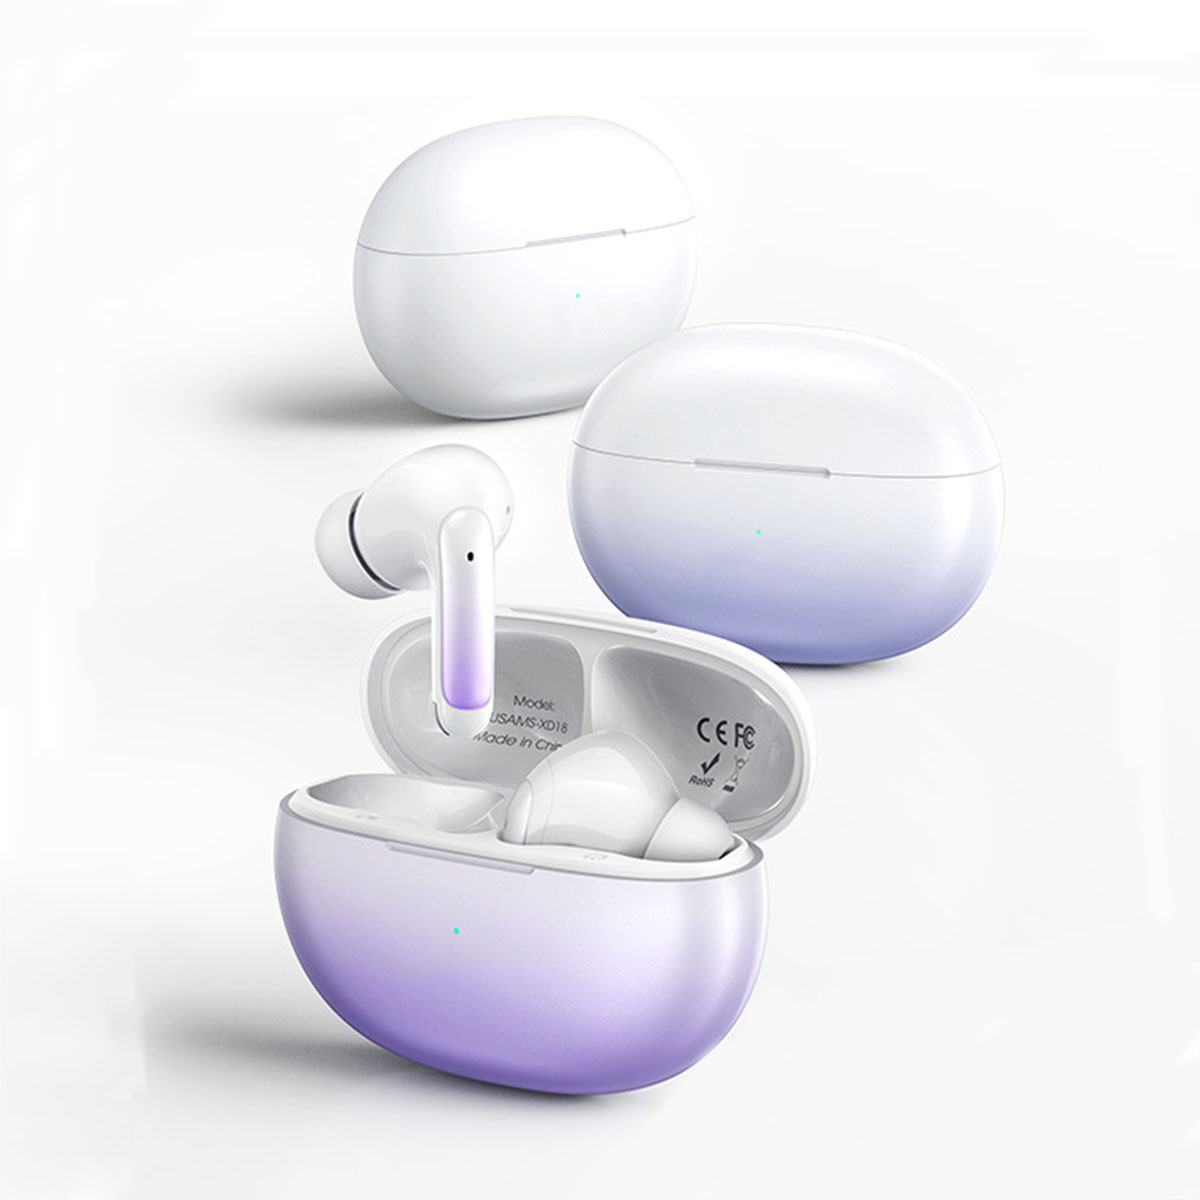 BRIGHTAKE Ultimative Bluetooth Sport-Ohrhörer: Wasserdicht, Bluetooth-Kopfhörer In-ear mehr!, weiß Gaming und Noise-Canceling